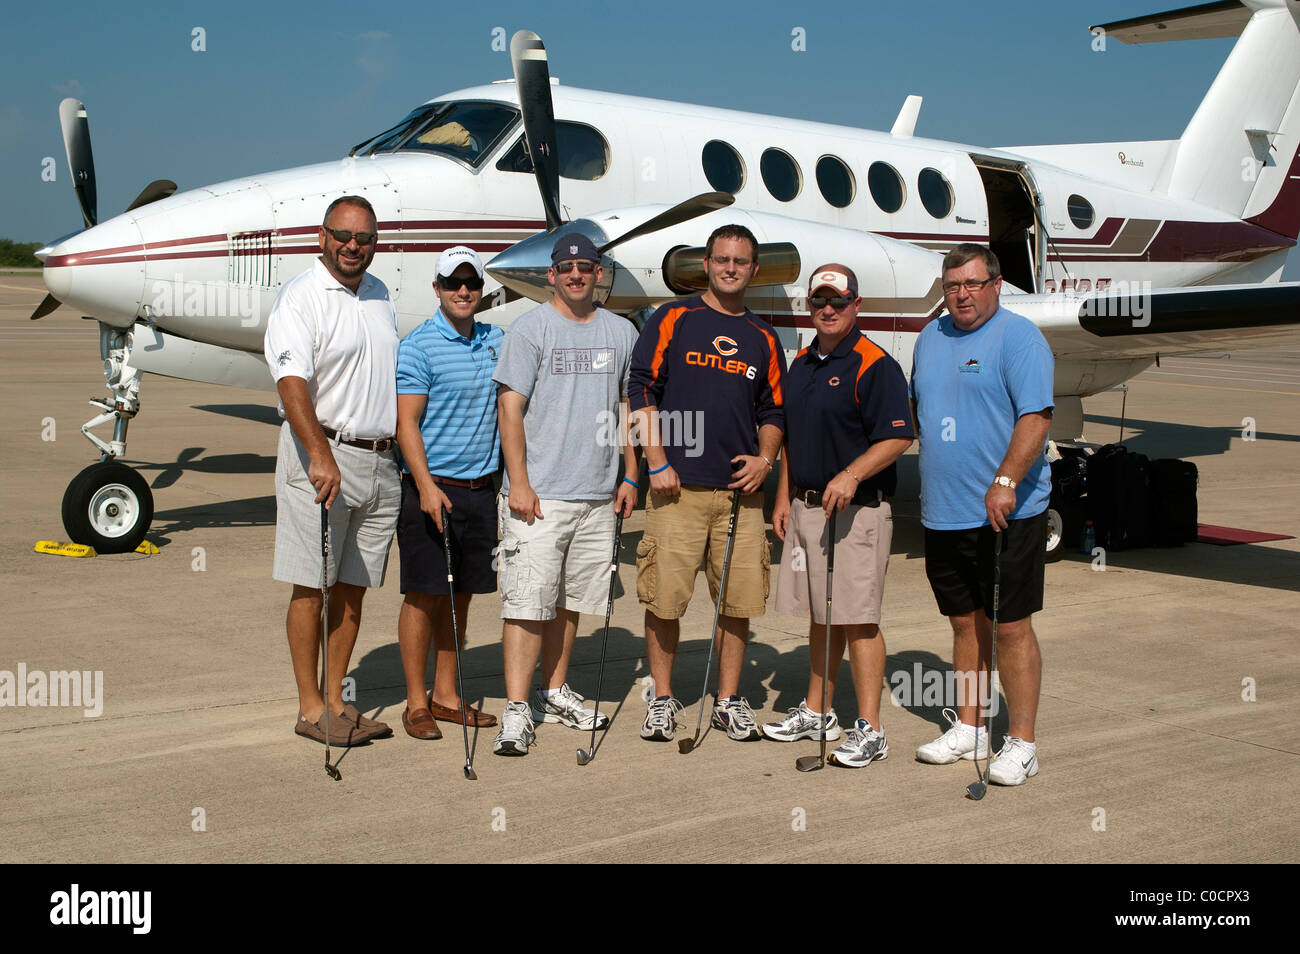 Los aficionados al golf de Chicago volar en avión privado a Arlington, Texas, EE.UU., para jugar al golf en donde el clima es mejor. Foto de stock